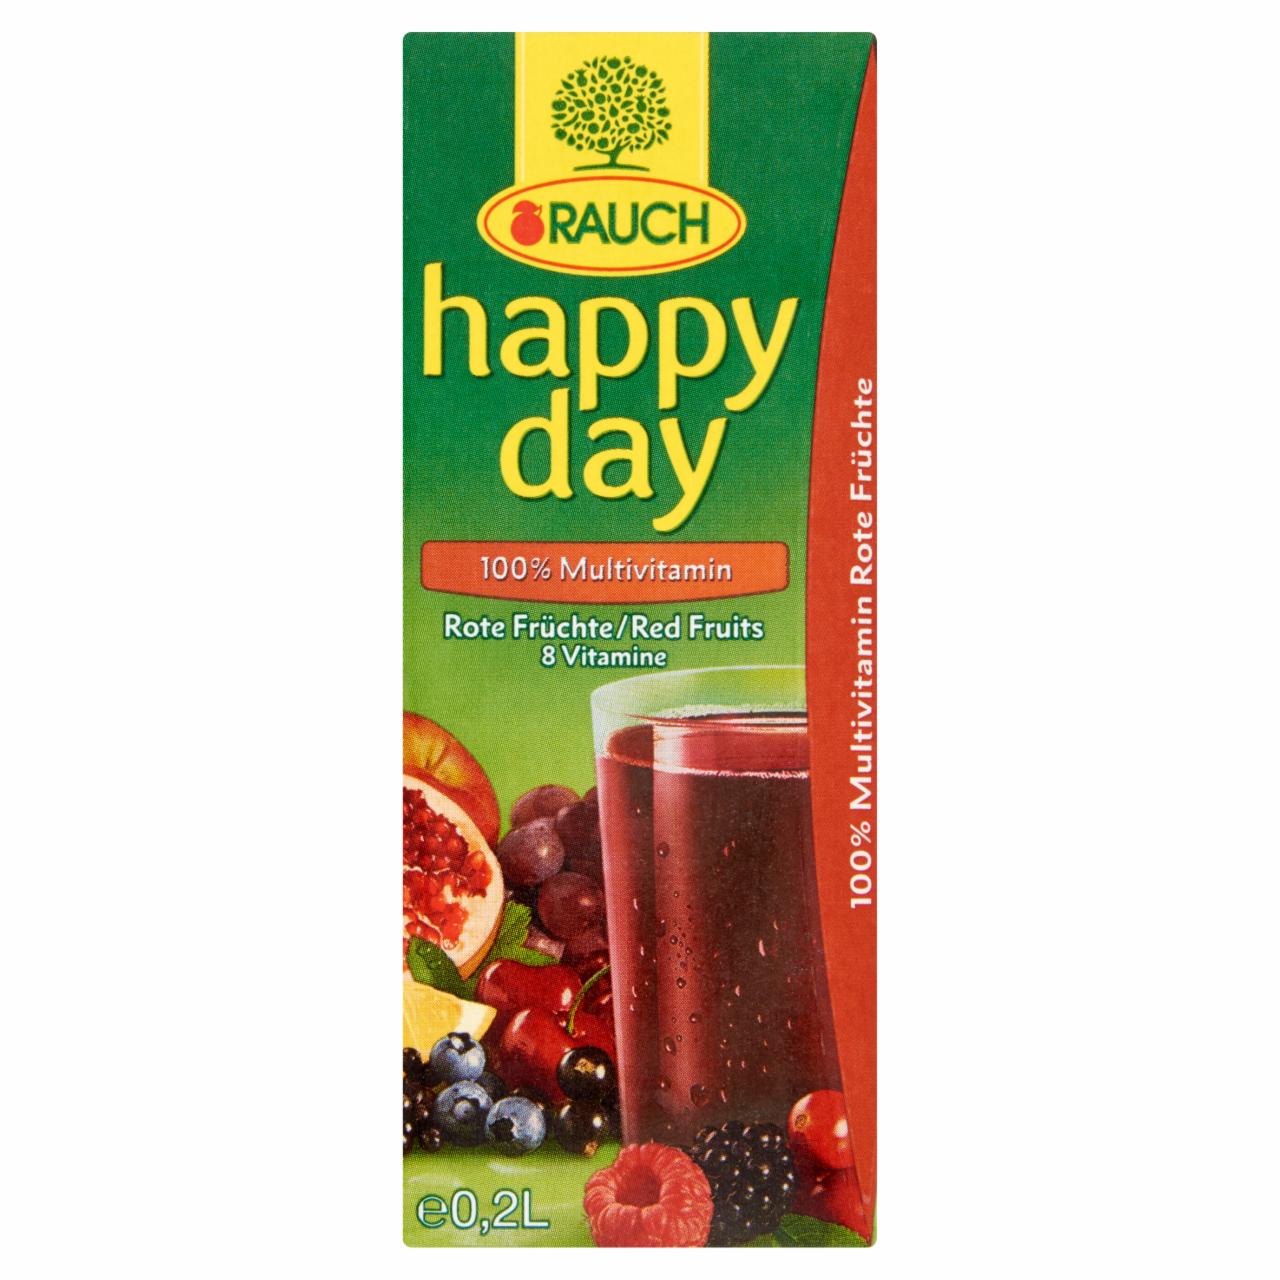 Képek - Rauch Happy Day 100% Multivitamin vegyes gyümölcslé 8 vitaminnal 0,2 l